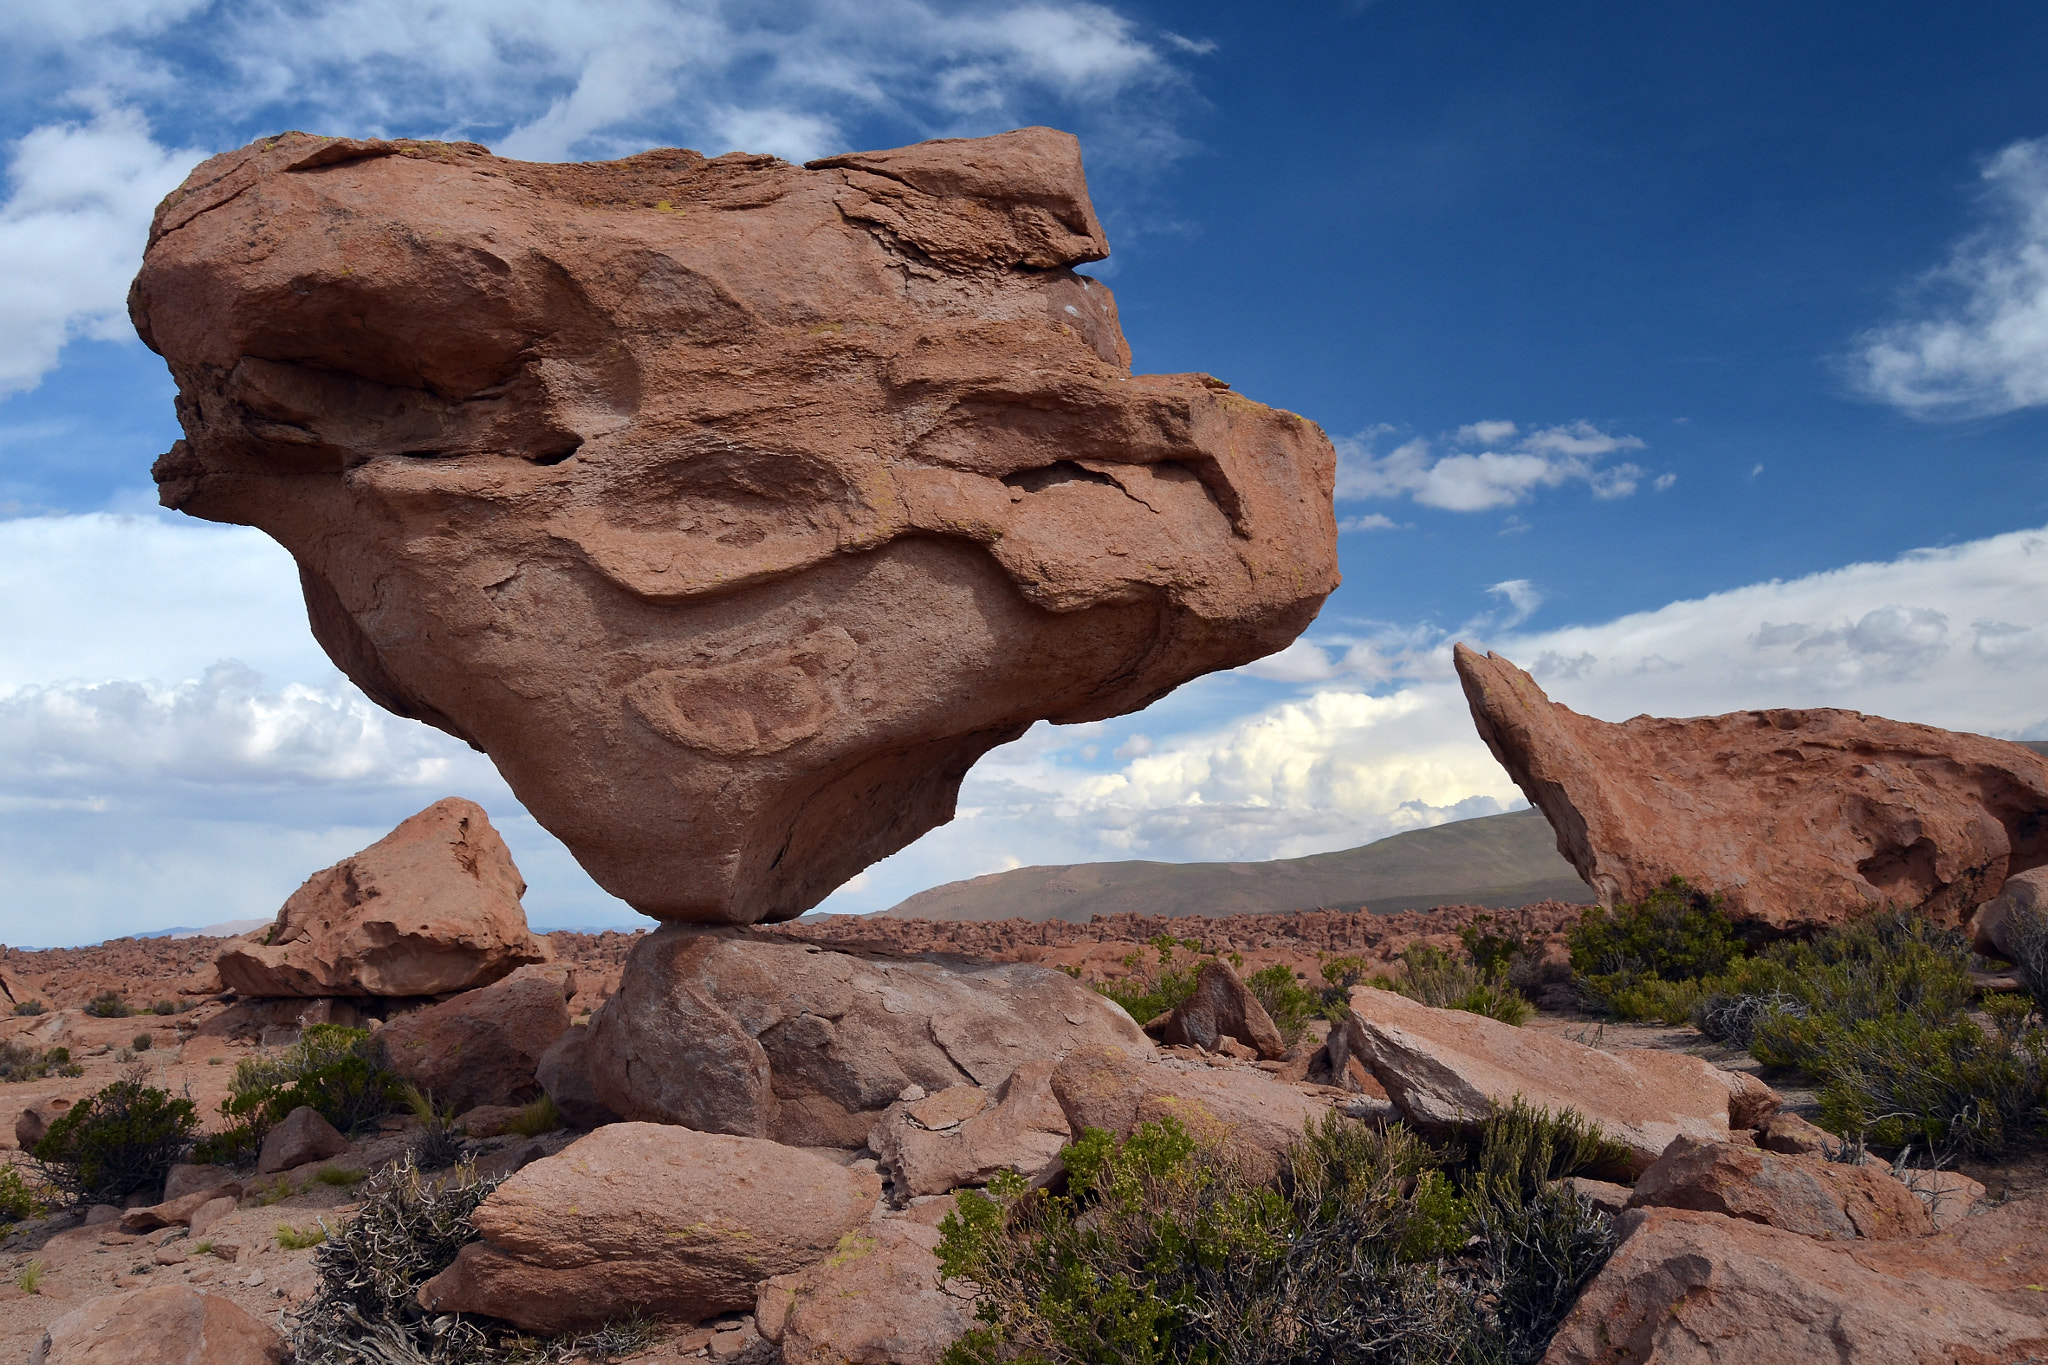 Balancing rock in the Valle de las Rocas